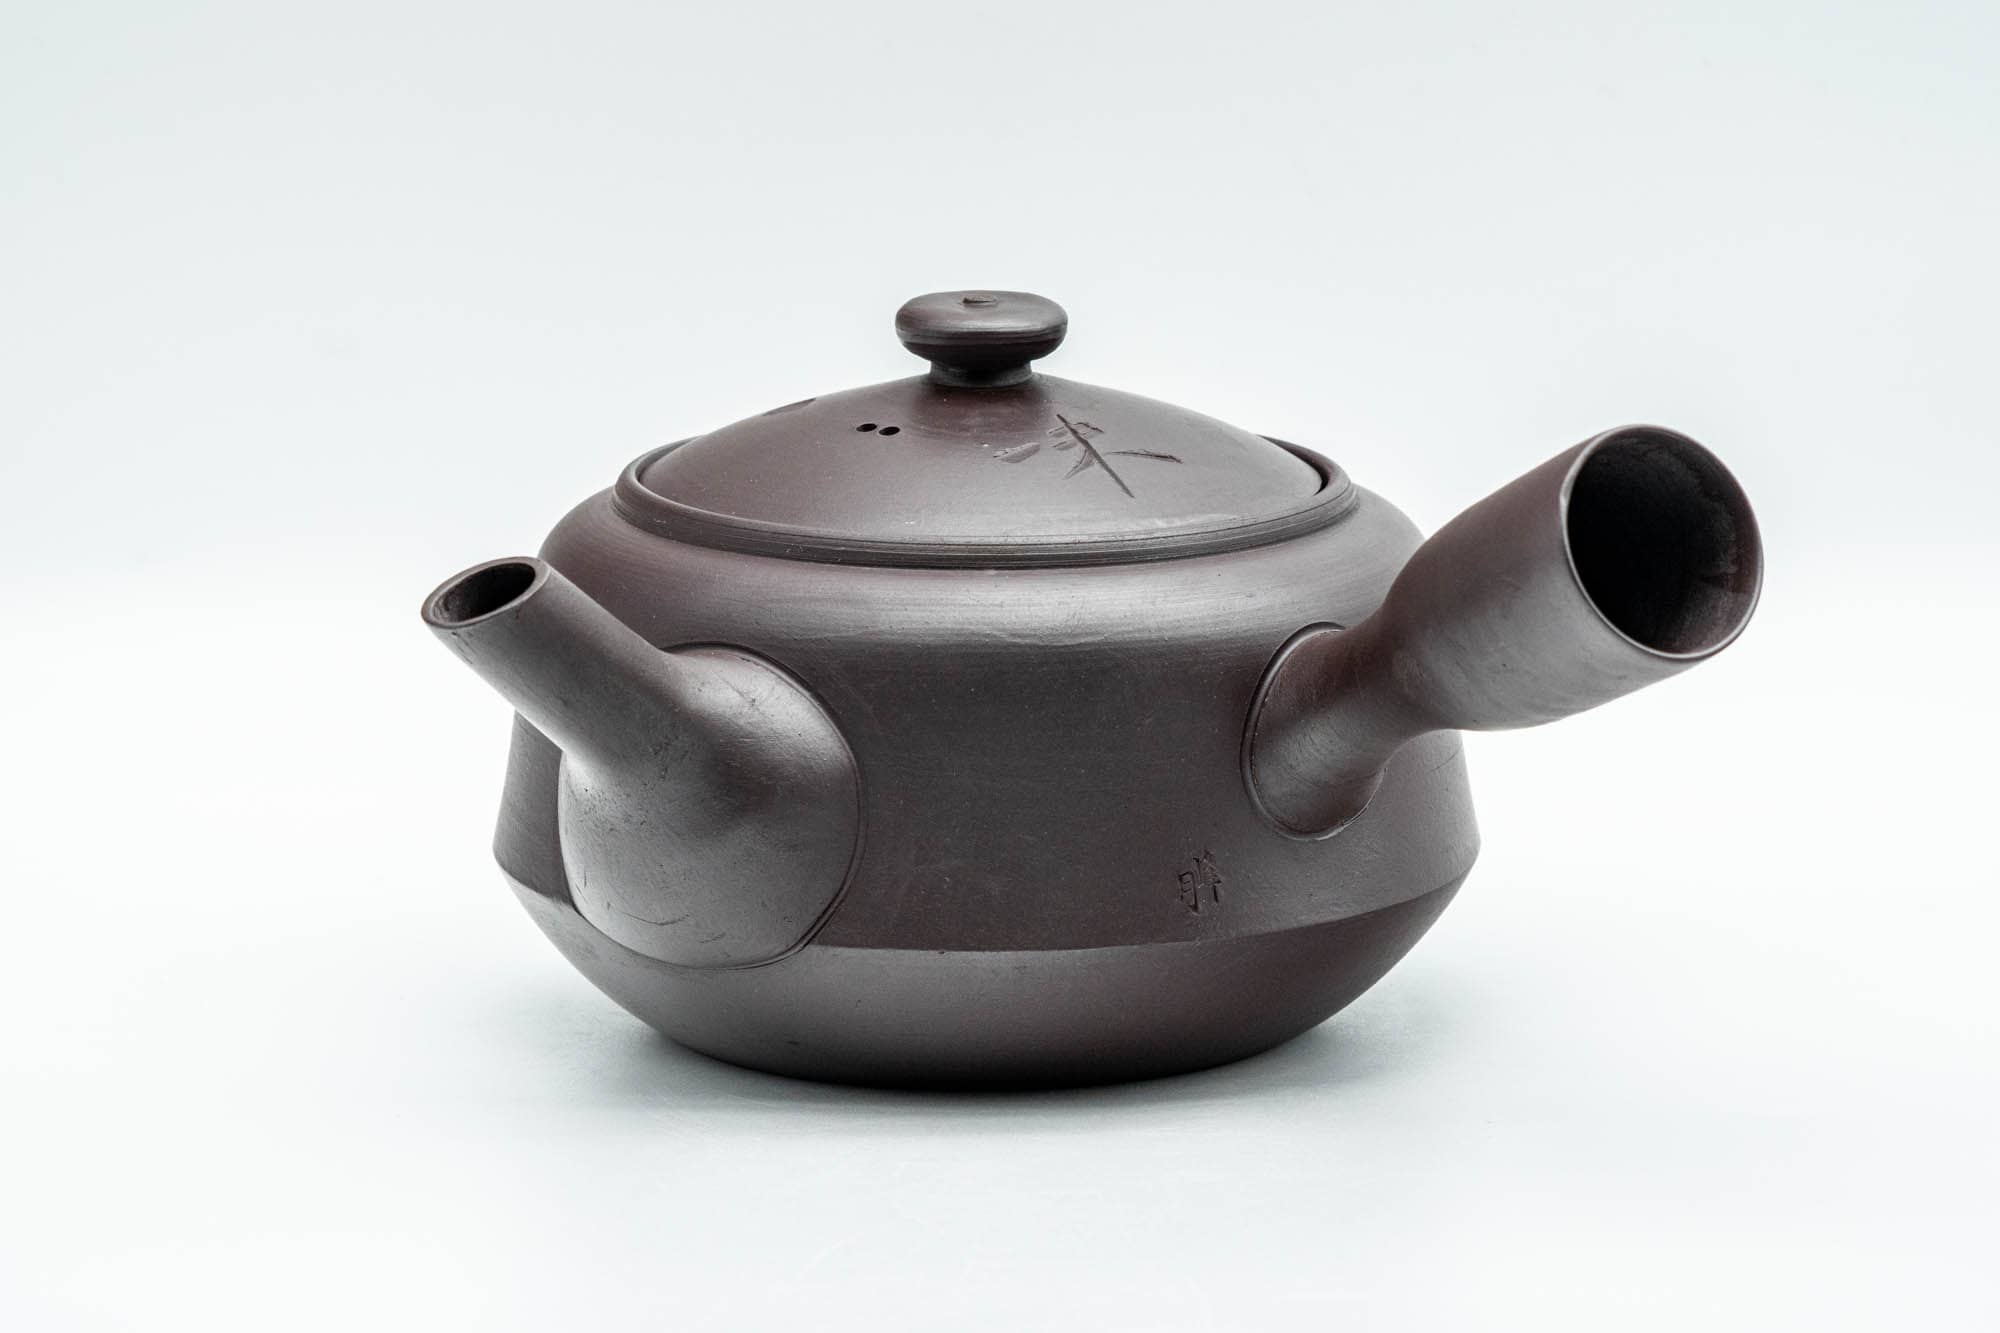 Japanese Kyusu - Large Kanji Engraved Banko-yaki Debeso Teapot - 500ml - Tezumi